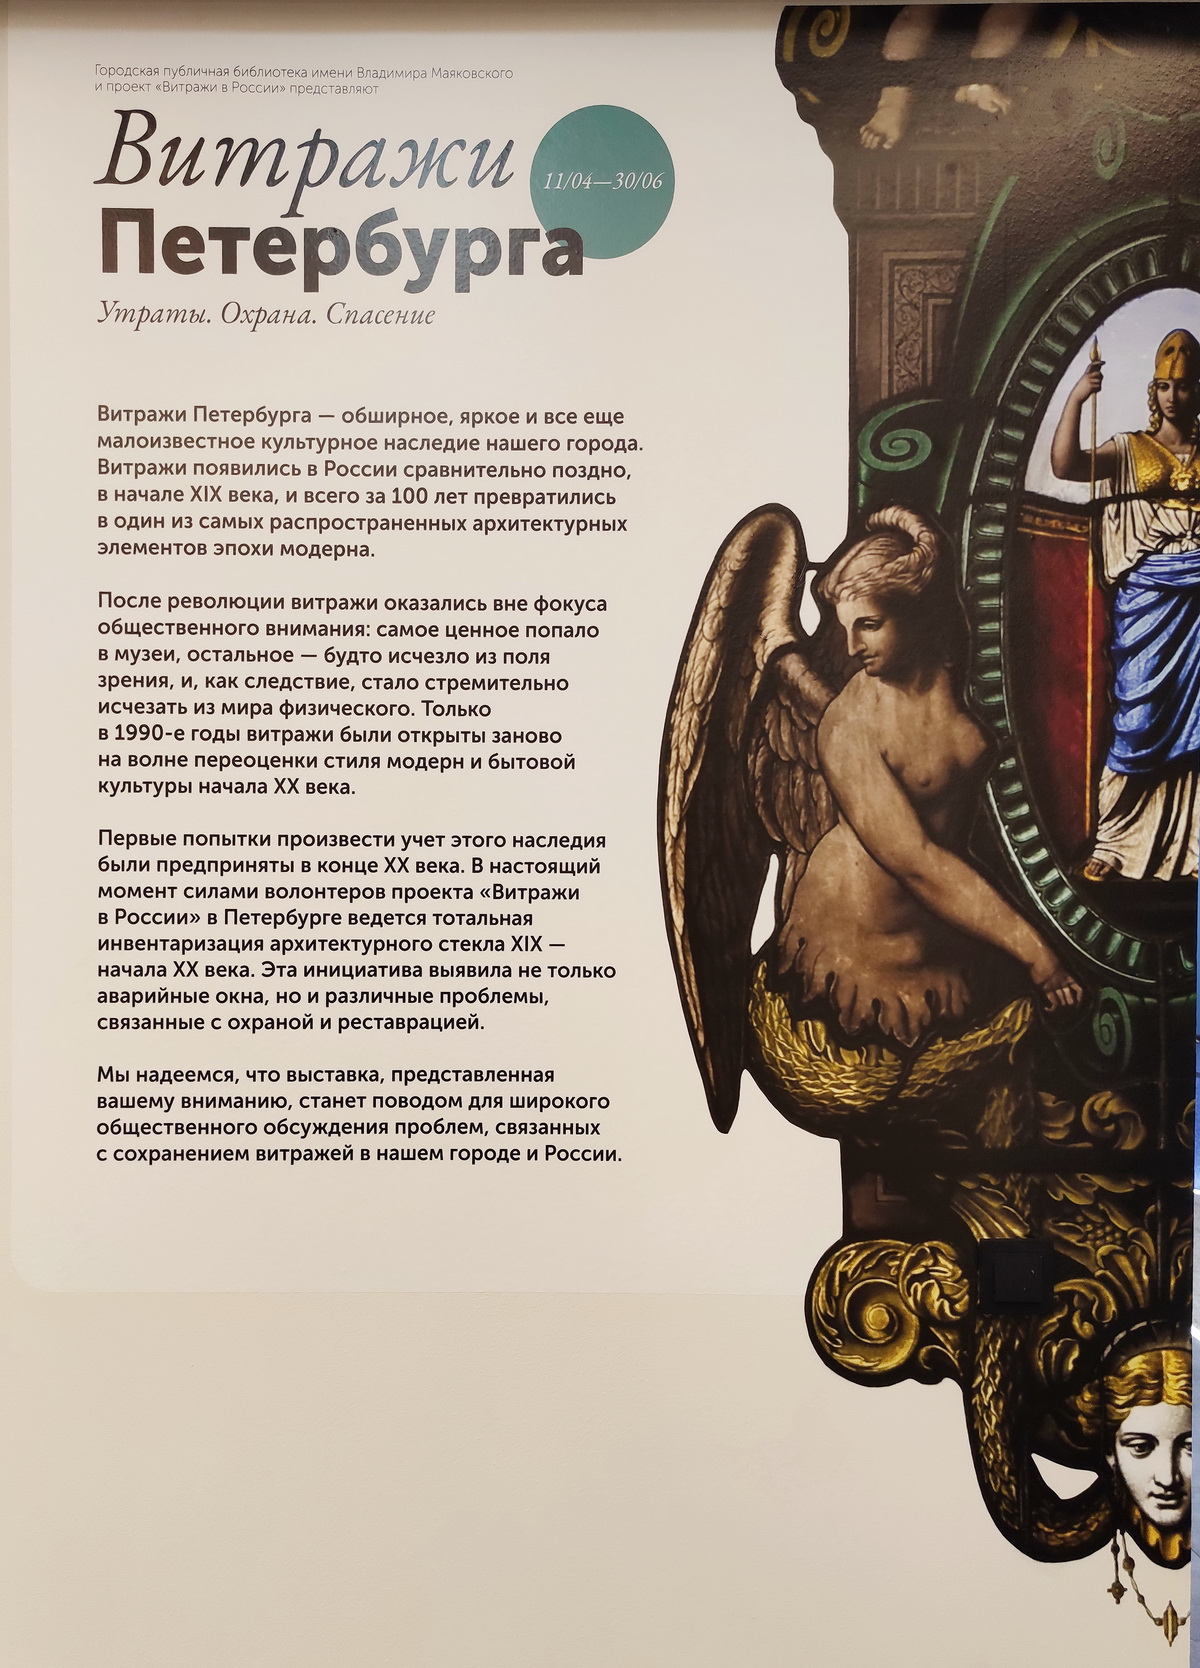 Фрагмент стендовой выставки о защите витражей Петербурга. Апрель-июнь 2021